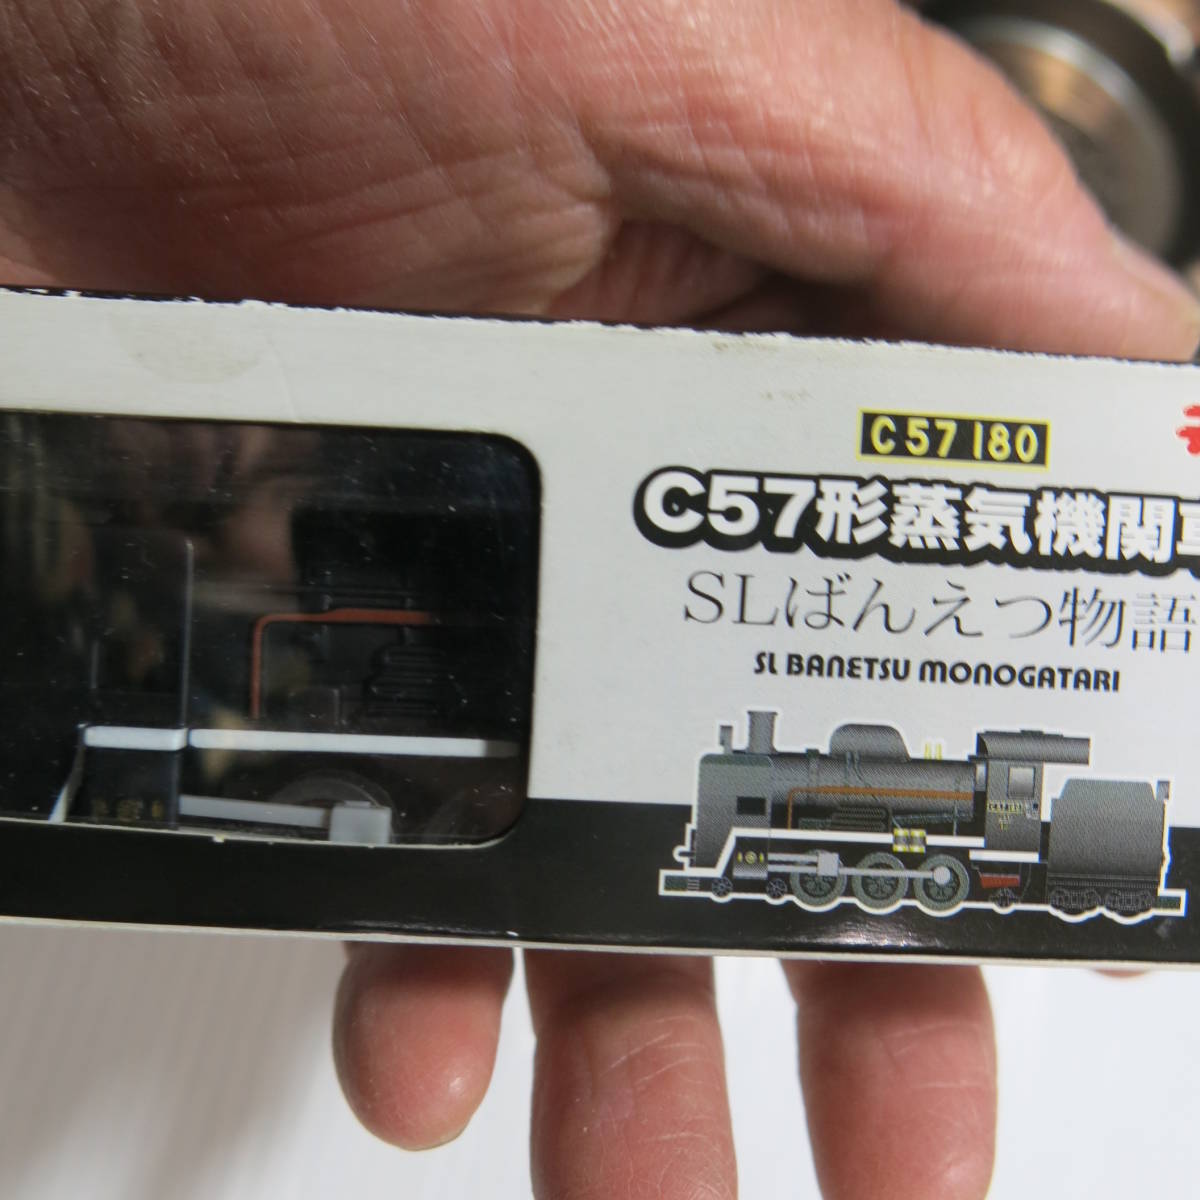 昭和レトロ国鉄JR タカラTOMY チョロQ C57 180 C57形蒸気機関車SLばん